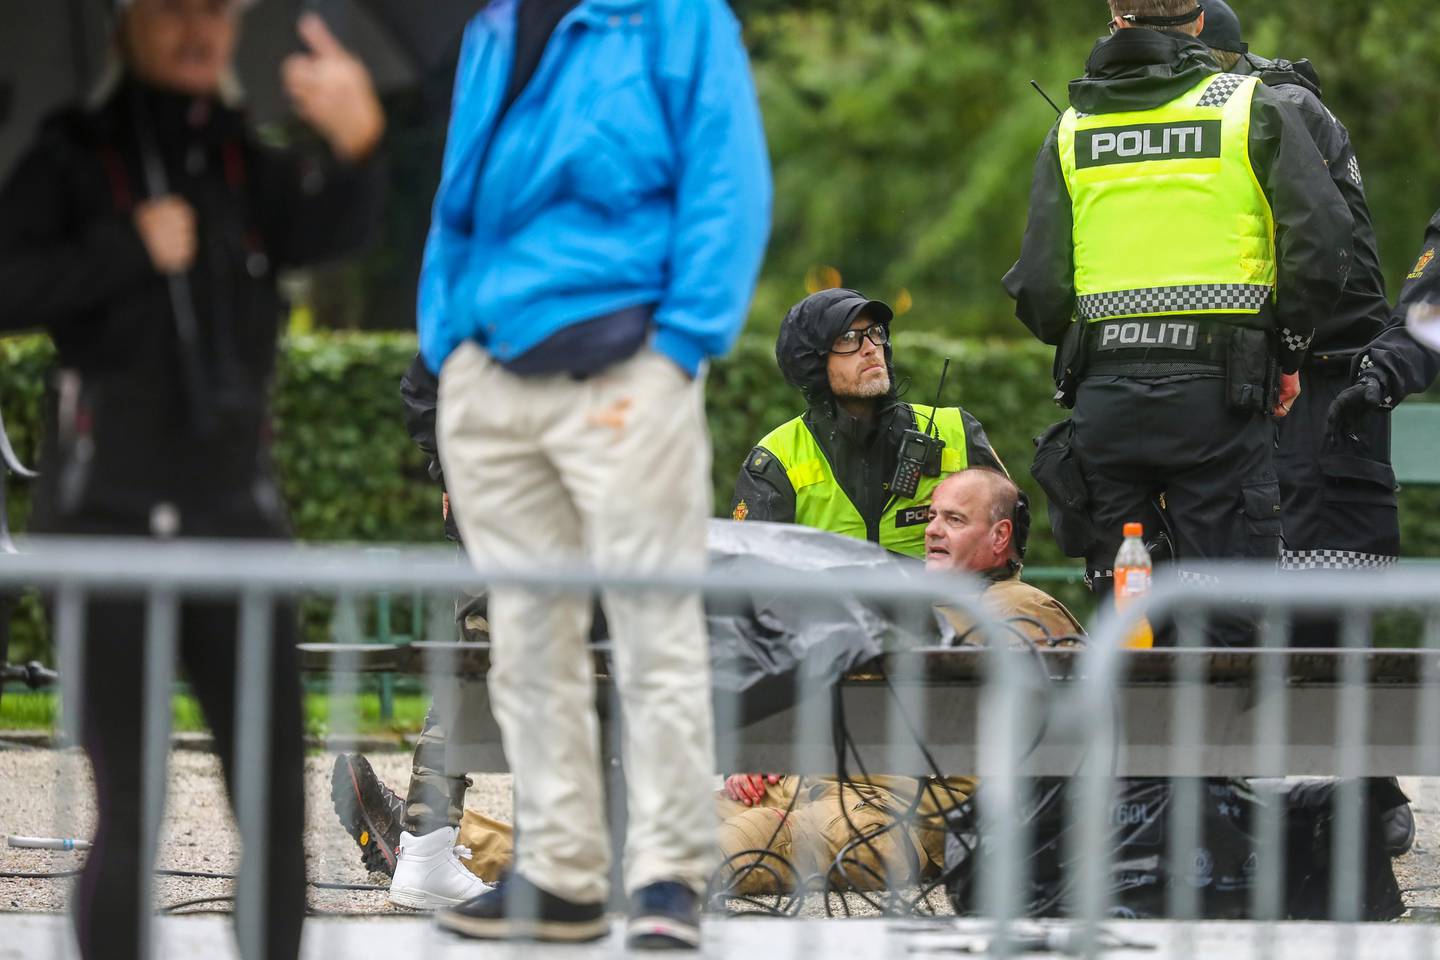 Bergen 20200822. 
Sian-leder Lars Thorsen tas hånd om av politiet etter at han ble angrepet på podiet under Sians markering på Festplassen lørdag.
Foto: Eivind Senneset / NTB scanpix